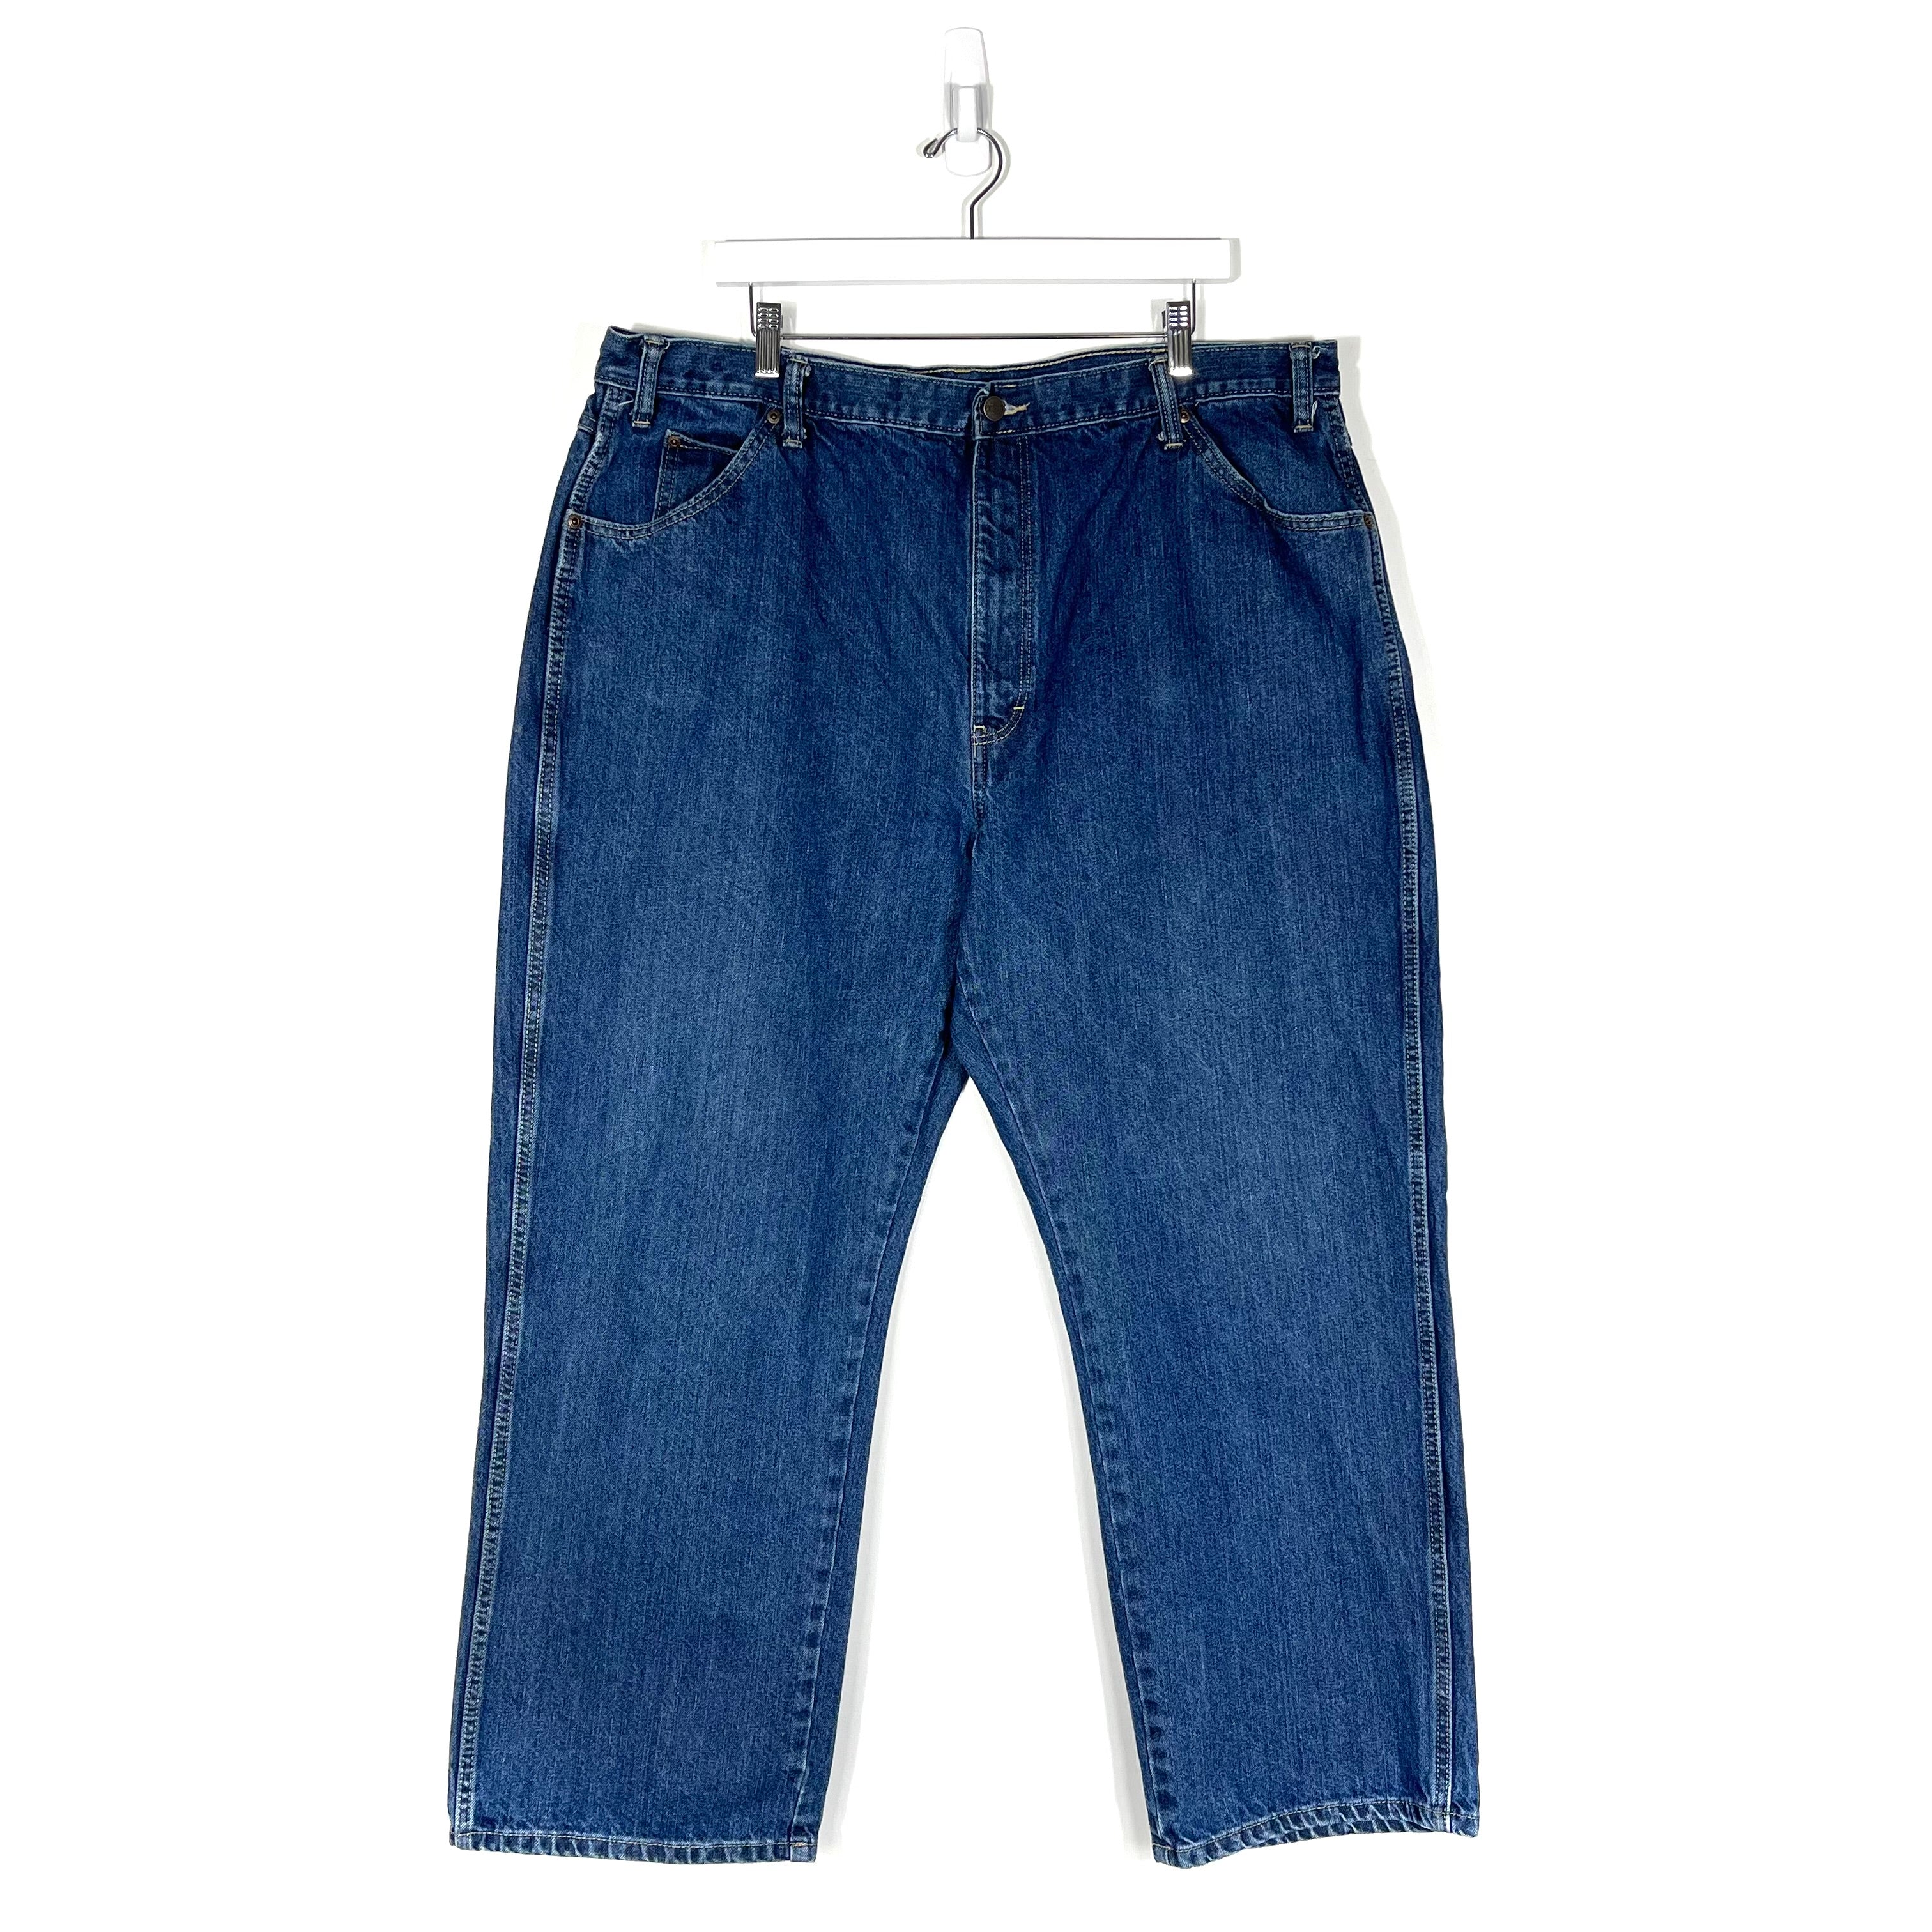 Vintage Dickies Jeans - Men's 42/32